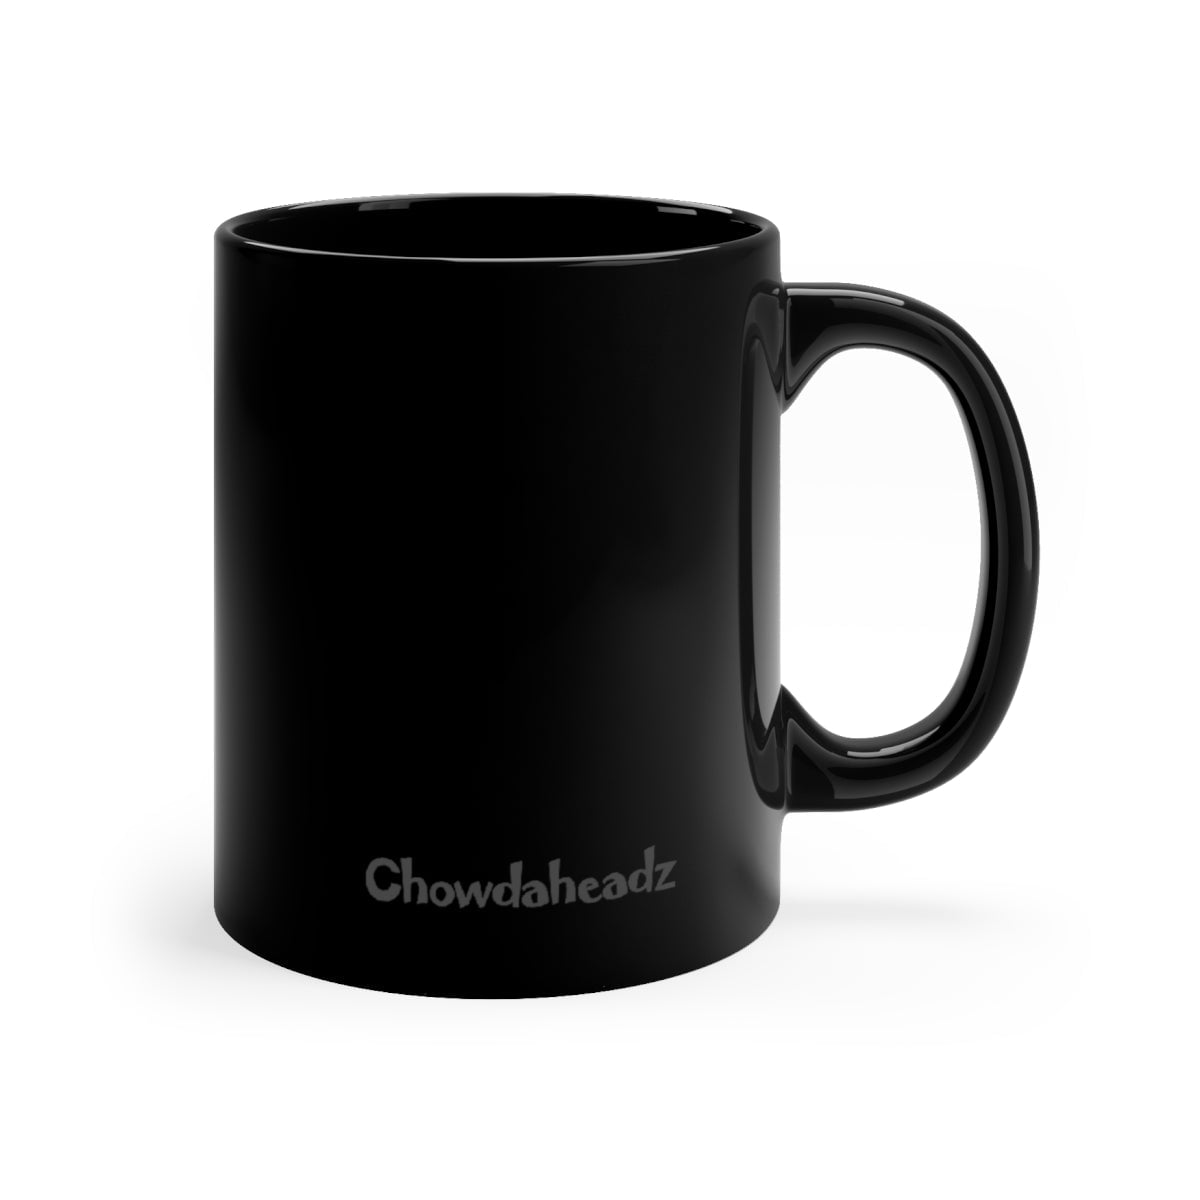 Comfy Cloths & Murder Shows 11oz Coffee Mug - Chowdaheadz